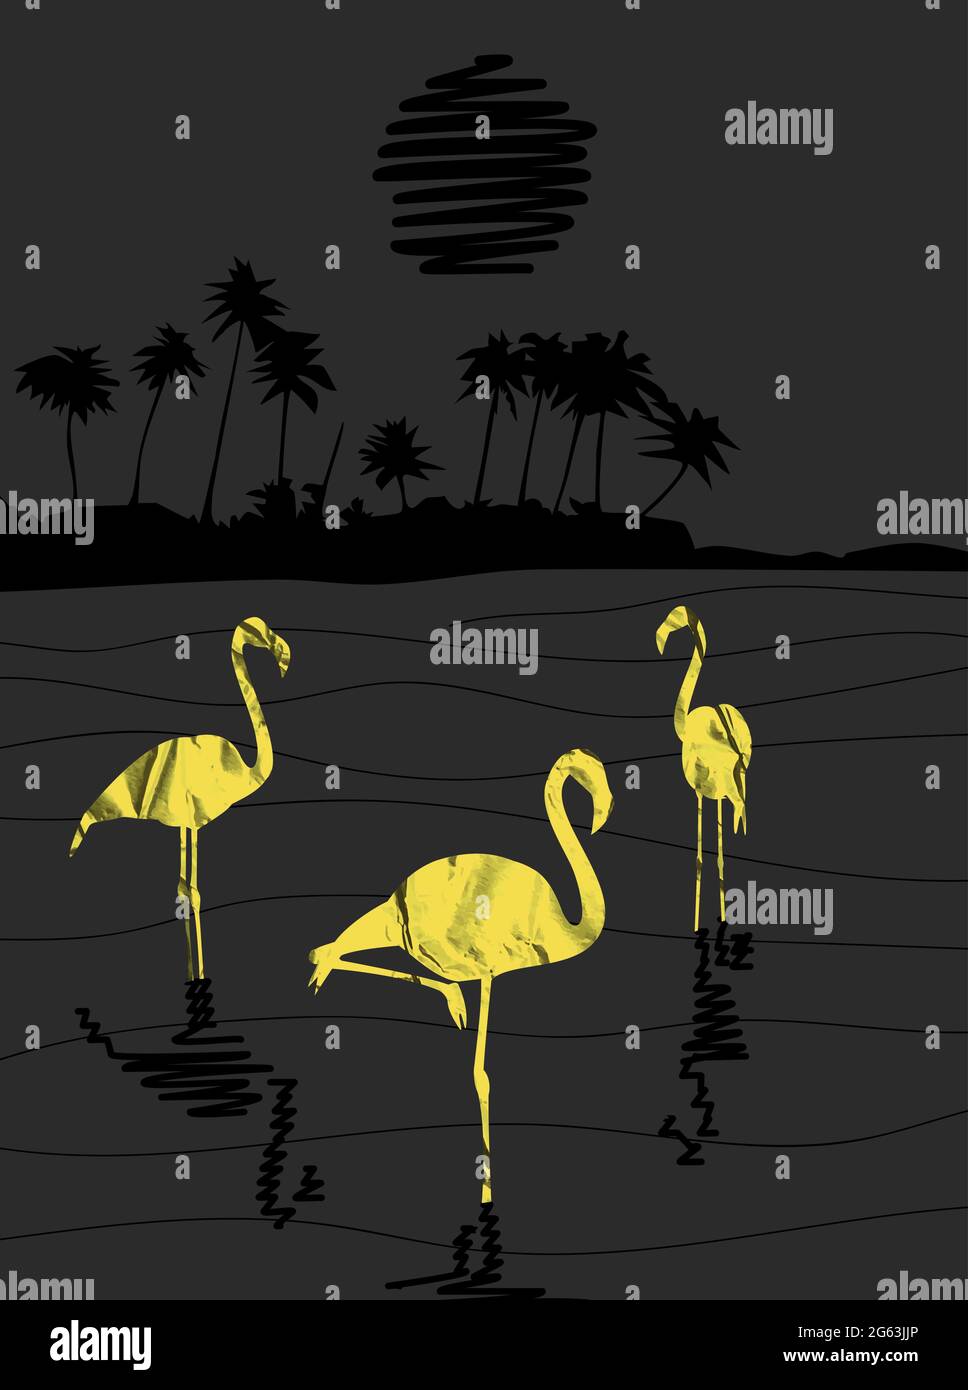 silhouettes en papier or de flamingo birds debout dans l'eau dans le paysage abstrait de nuit avec la lune noire et les palmiers illustration vectorielle de bord de mer Illustration de Vecteur